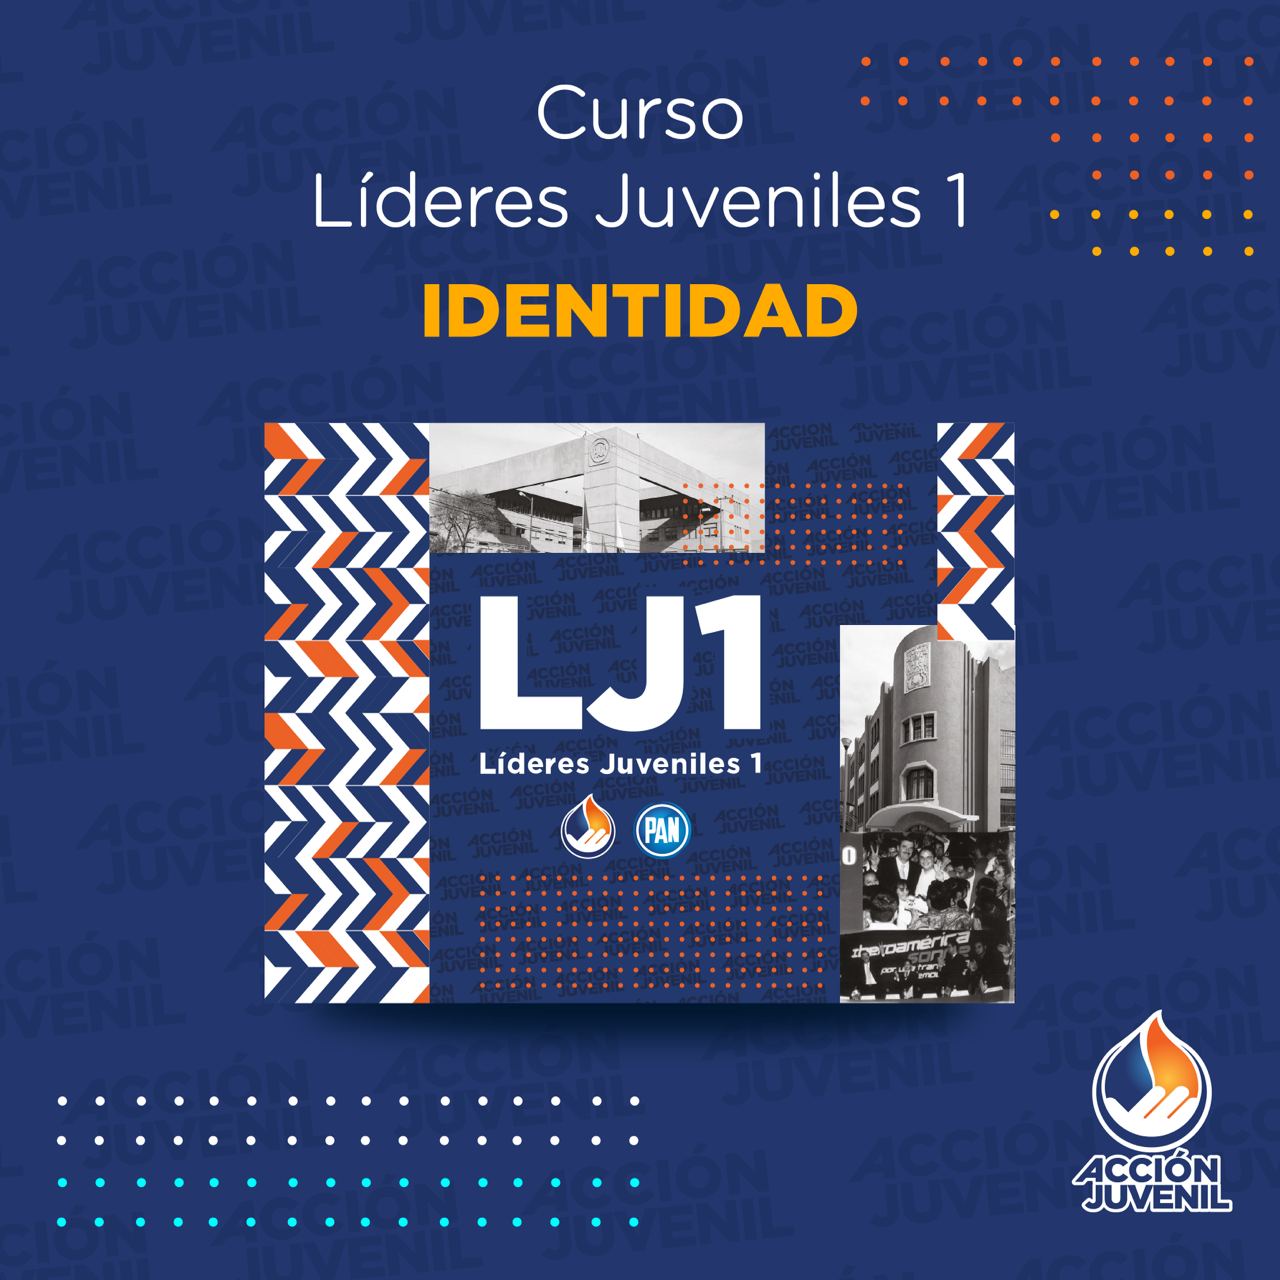 Curso Líderes Juveniles 1 Identidad Monterrey, NL 05/02/22